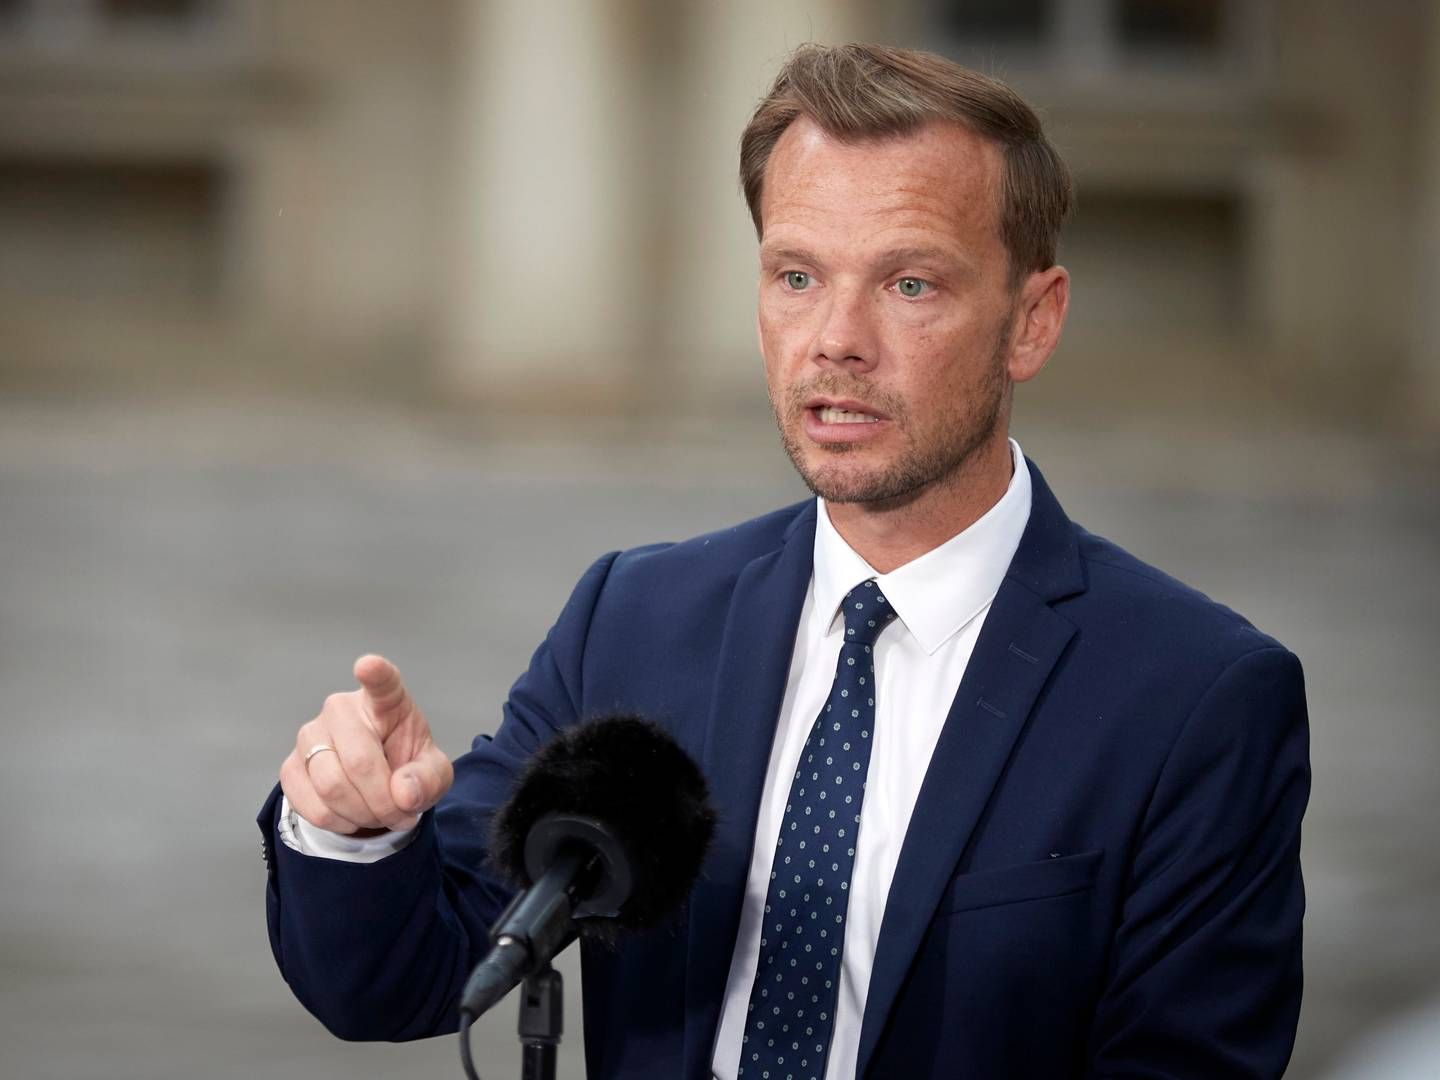 Justitsminister Peter Hummelgaard kalder bankers ulovlige gældsinddrivelse for en skandale. | Foto: Jens Dresling